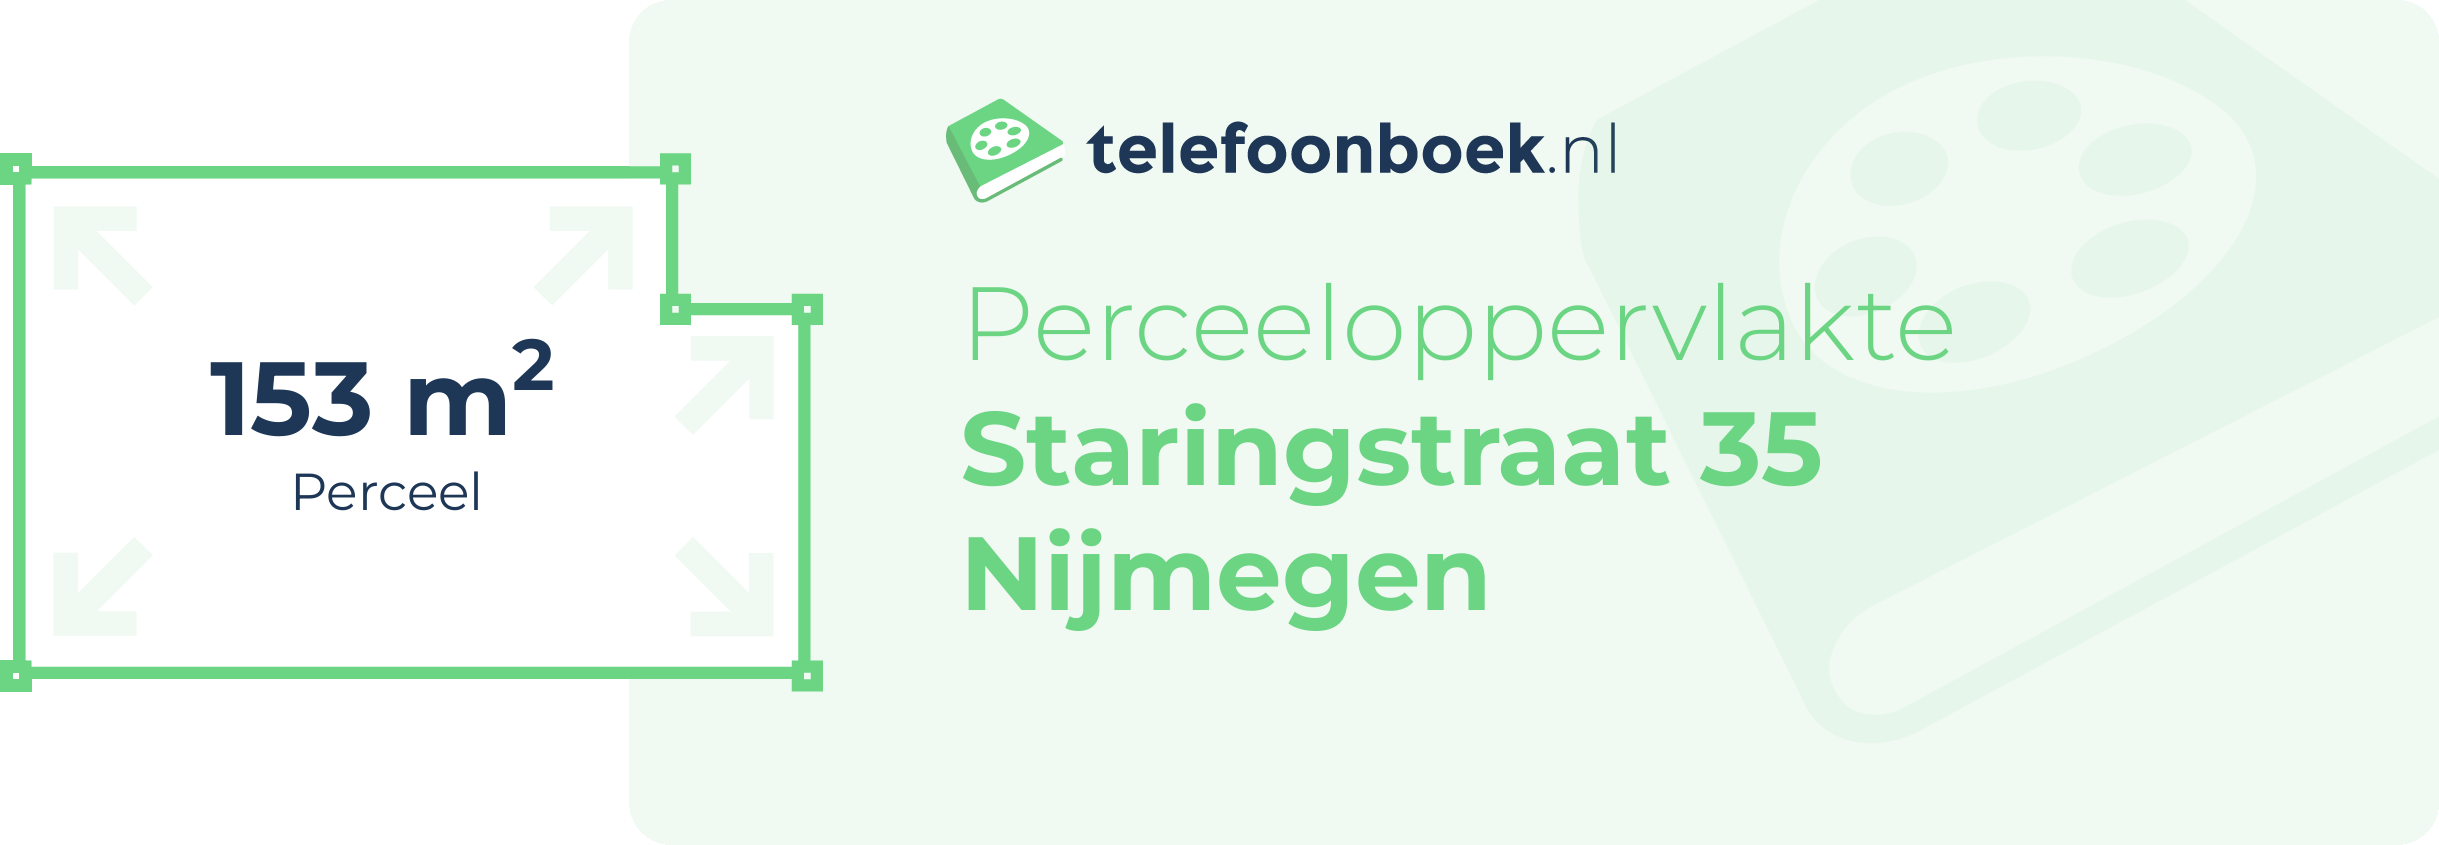 Perceeloppervlakte Staringstraat 35 Nijmegen